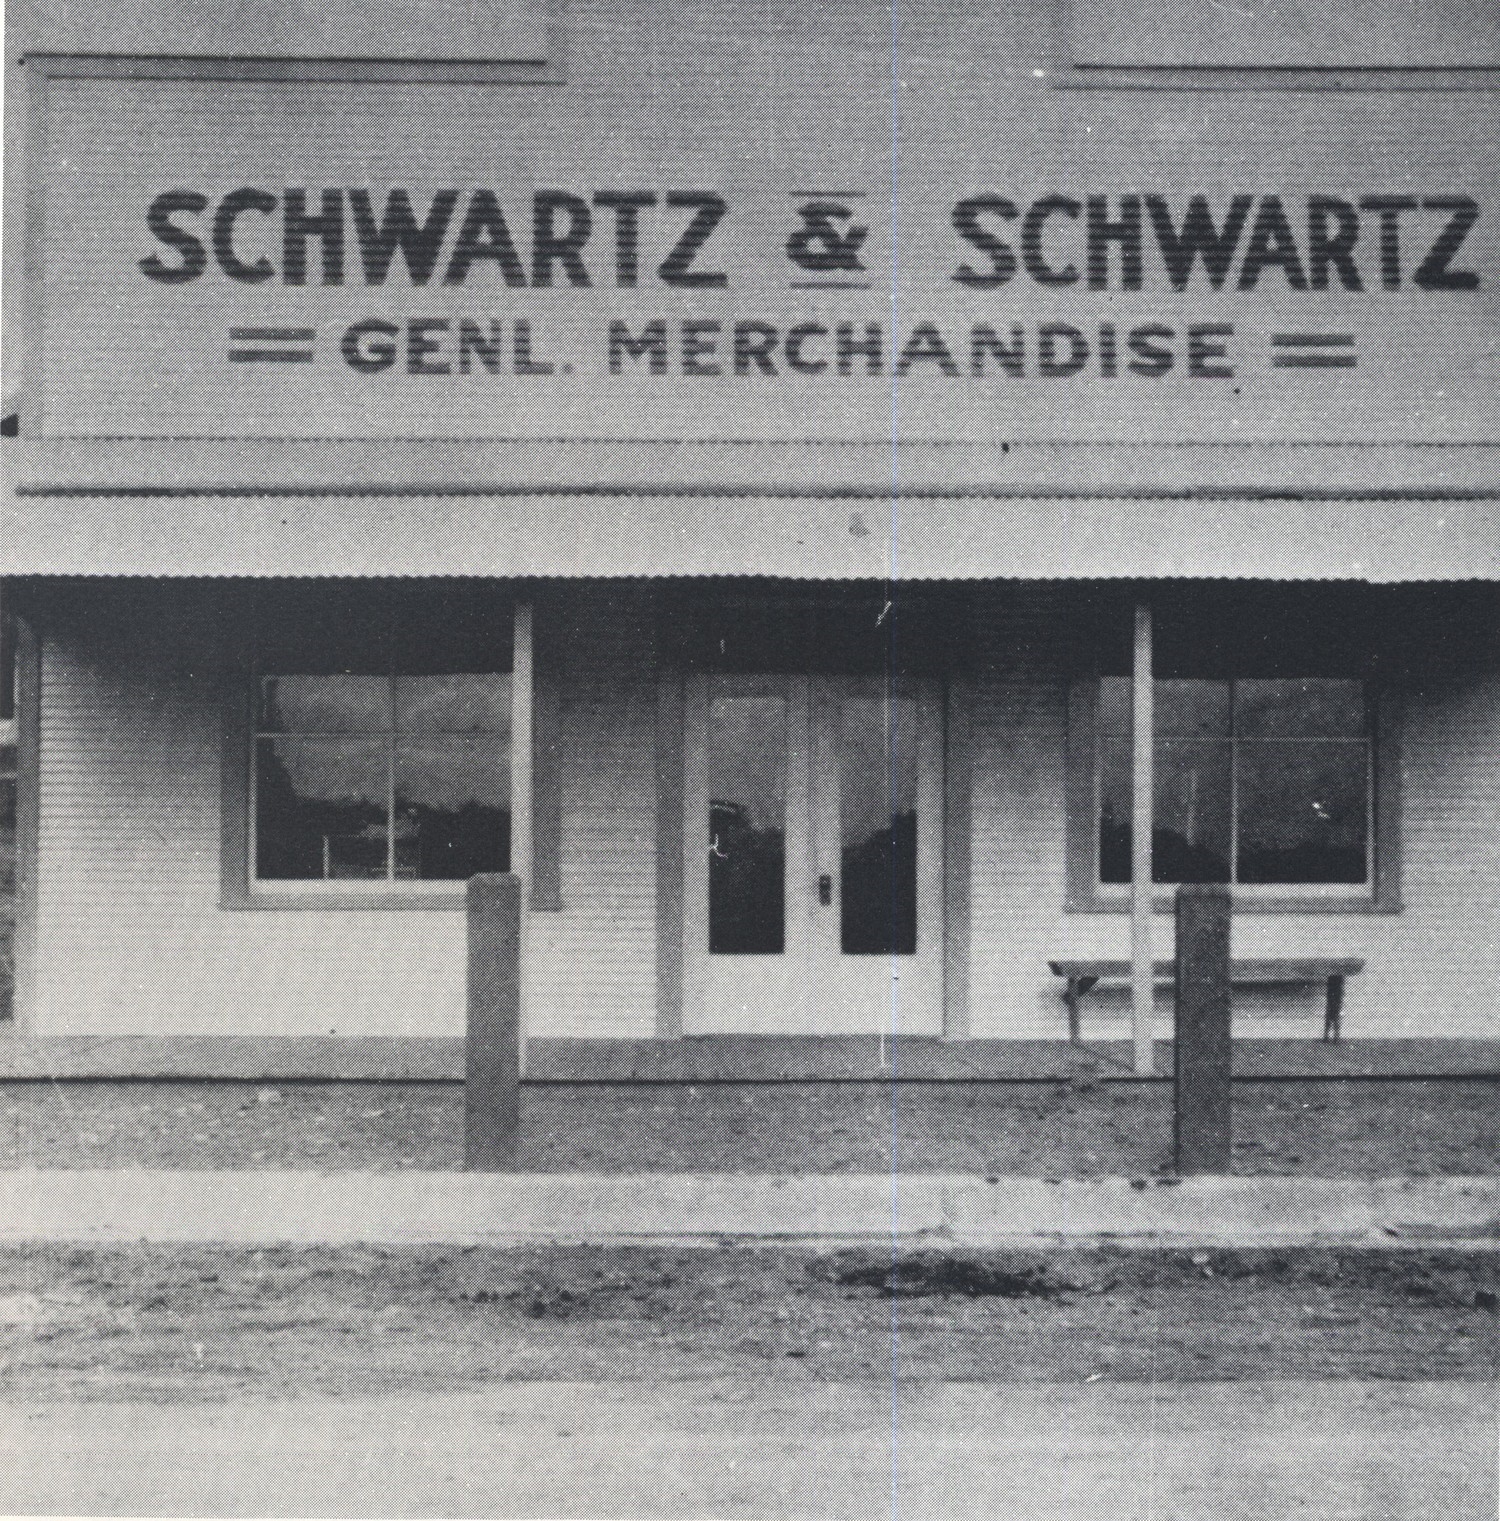 Schwartz & Schwartz Store, 1920s